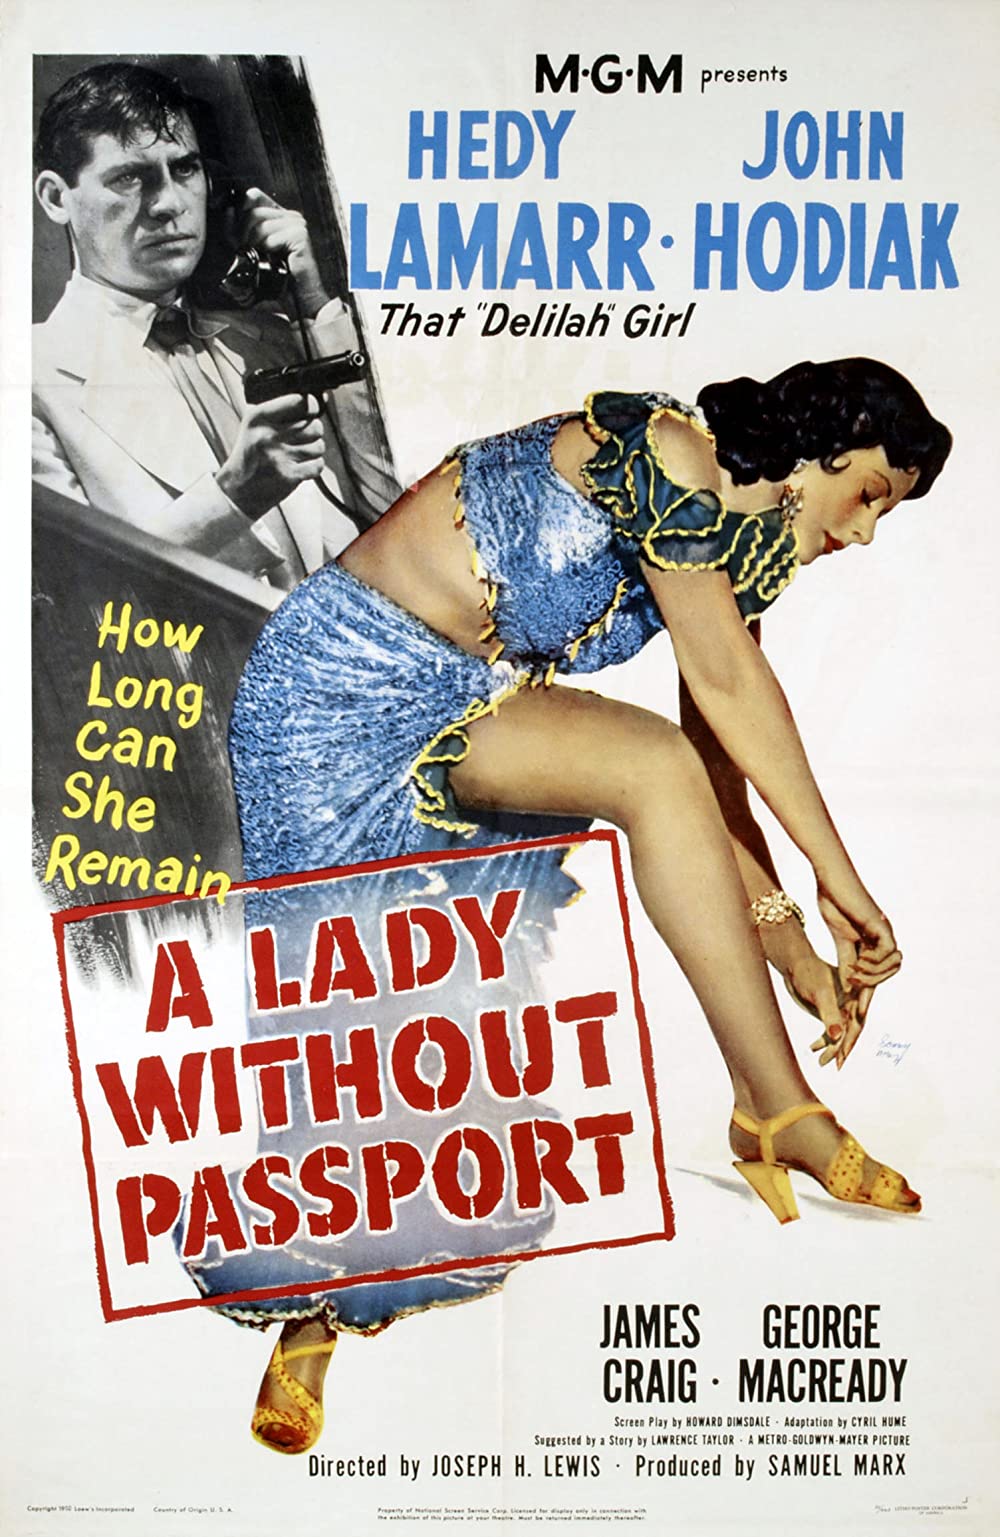 Filmbeschreibung zu A Lady Without Passport